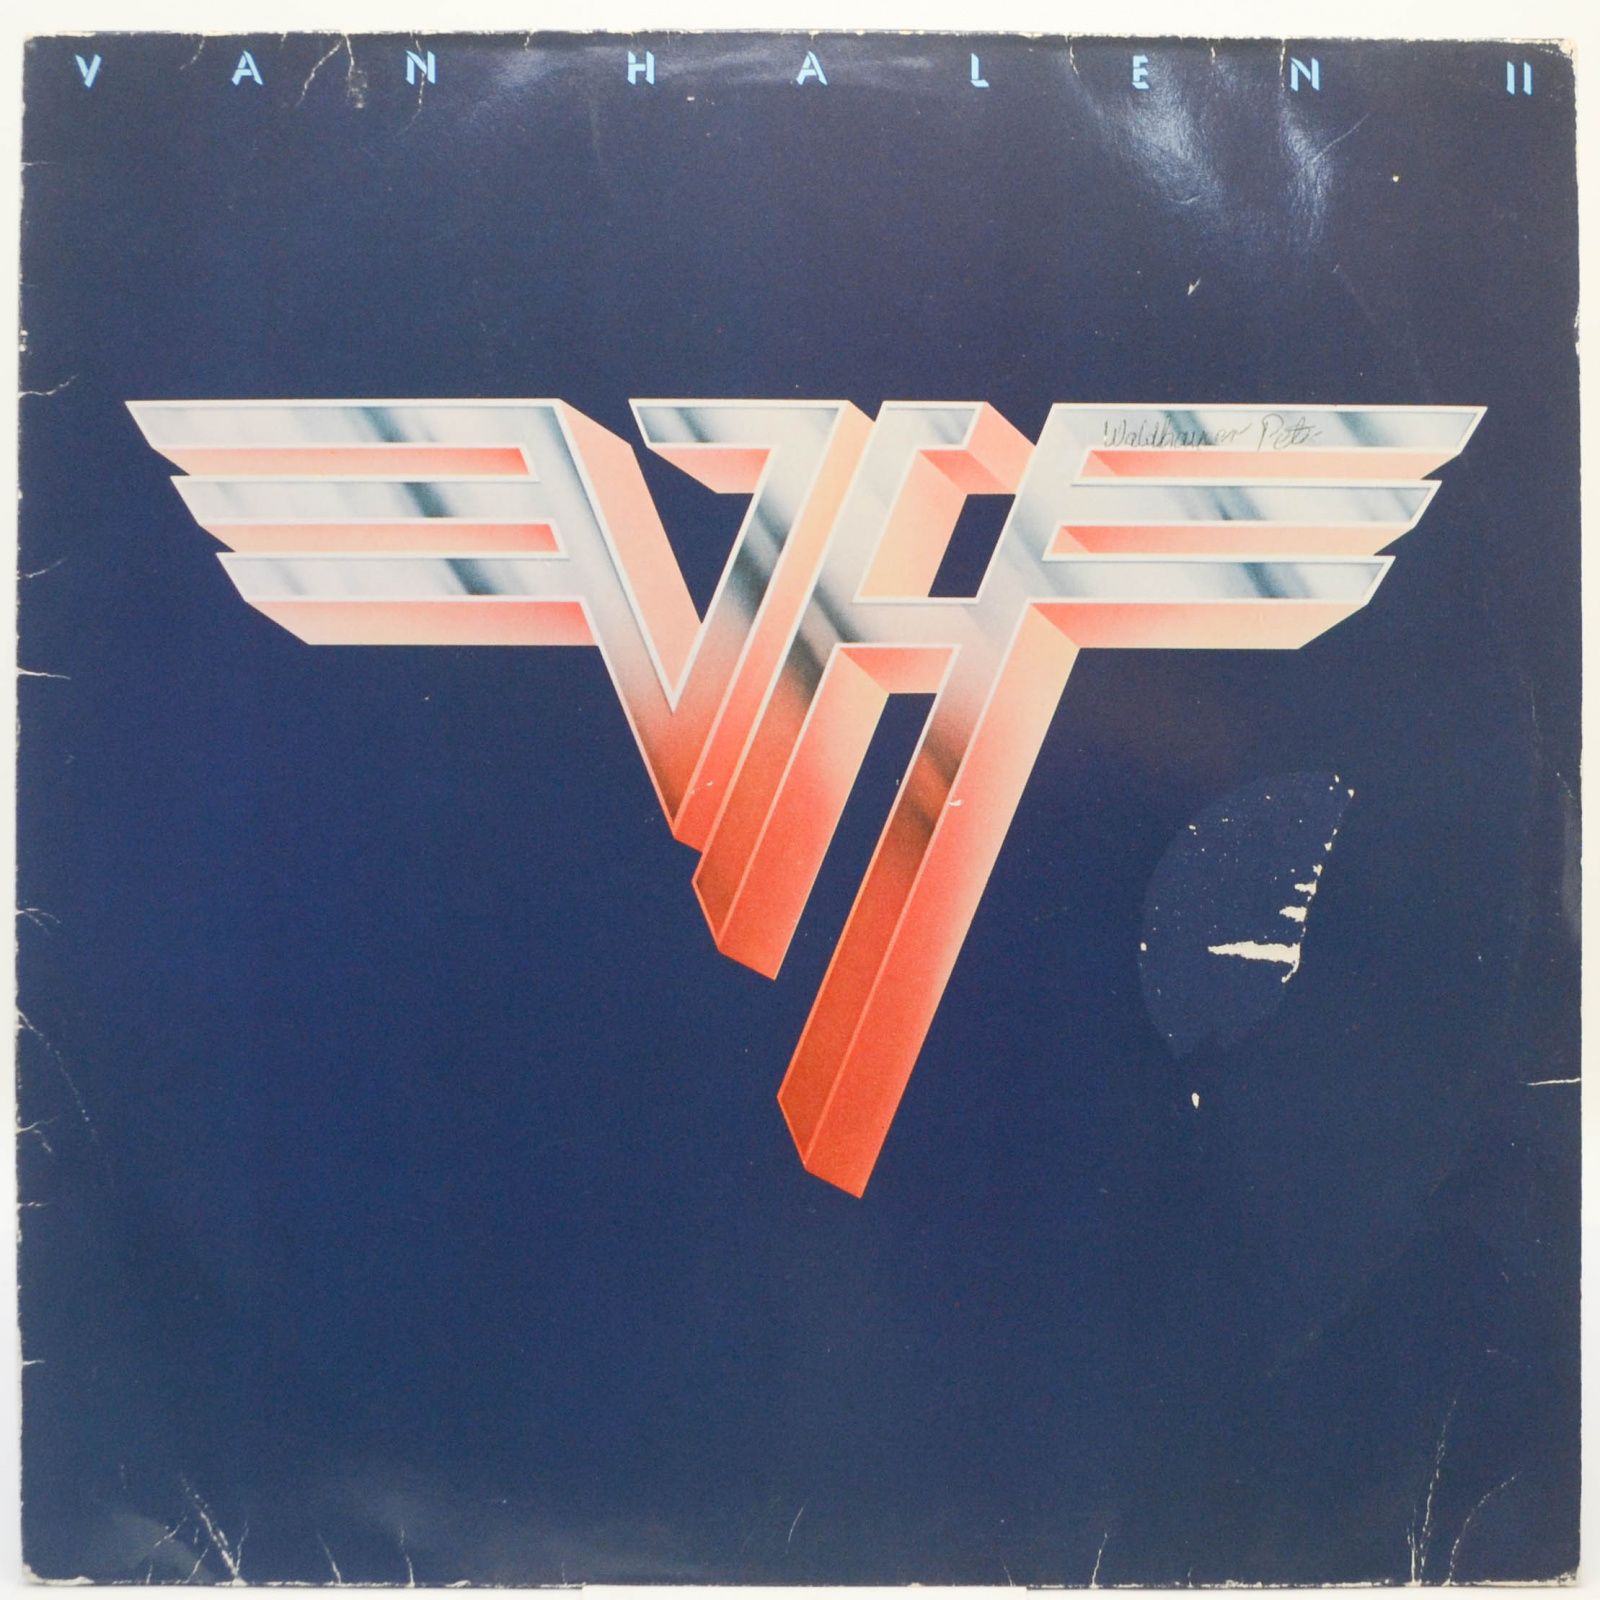 Van Halen II, 1979